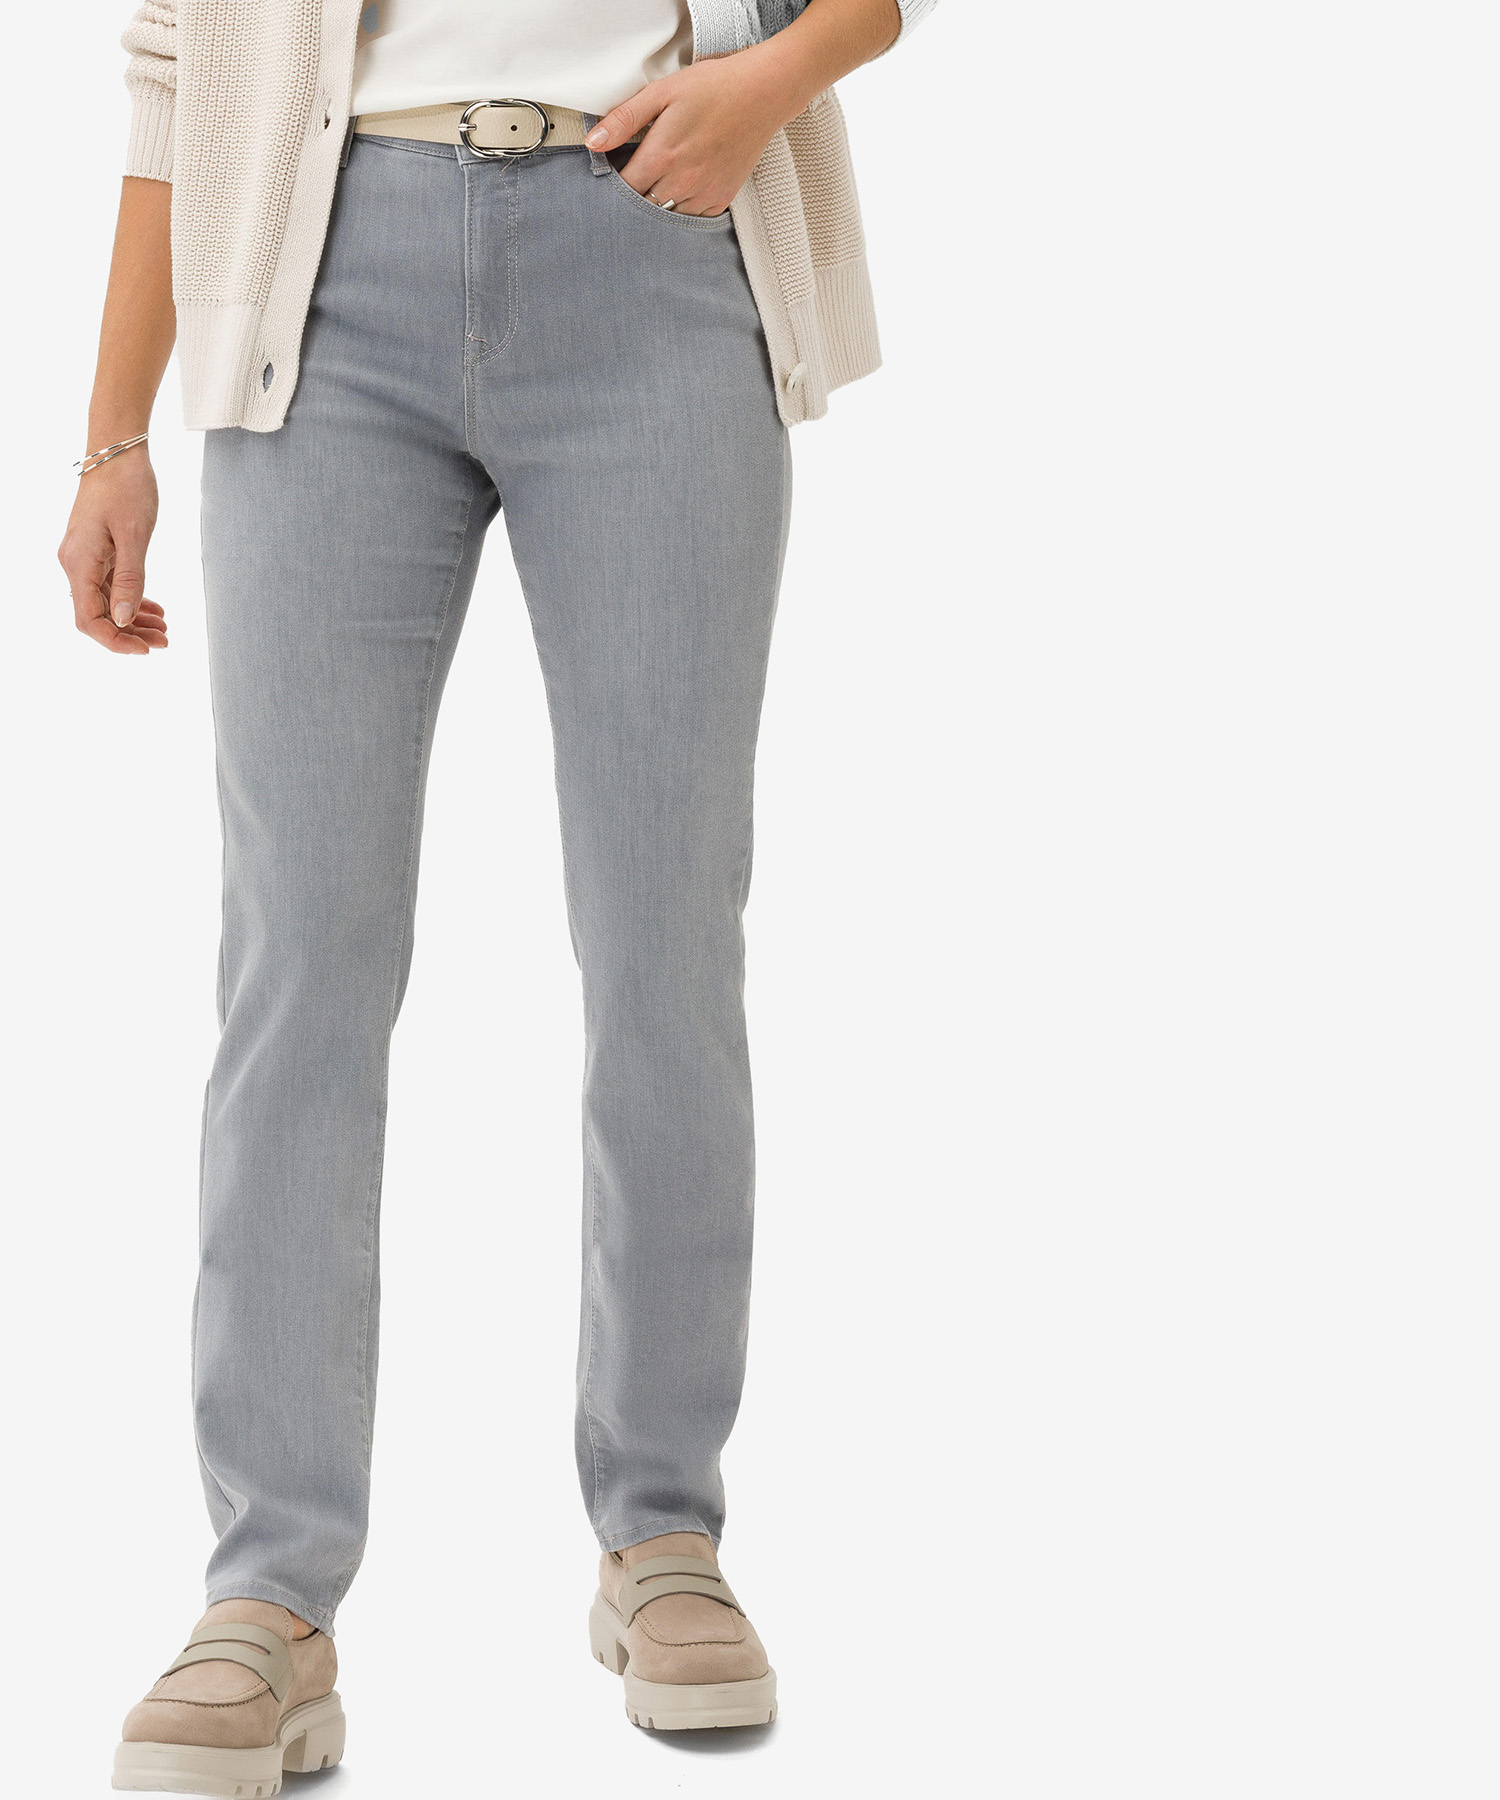 Brax Jeans in schmaler Passform von jeans Carola